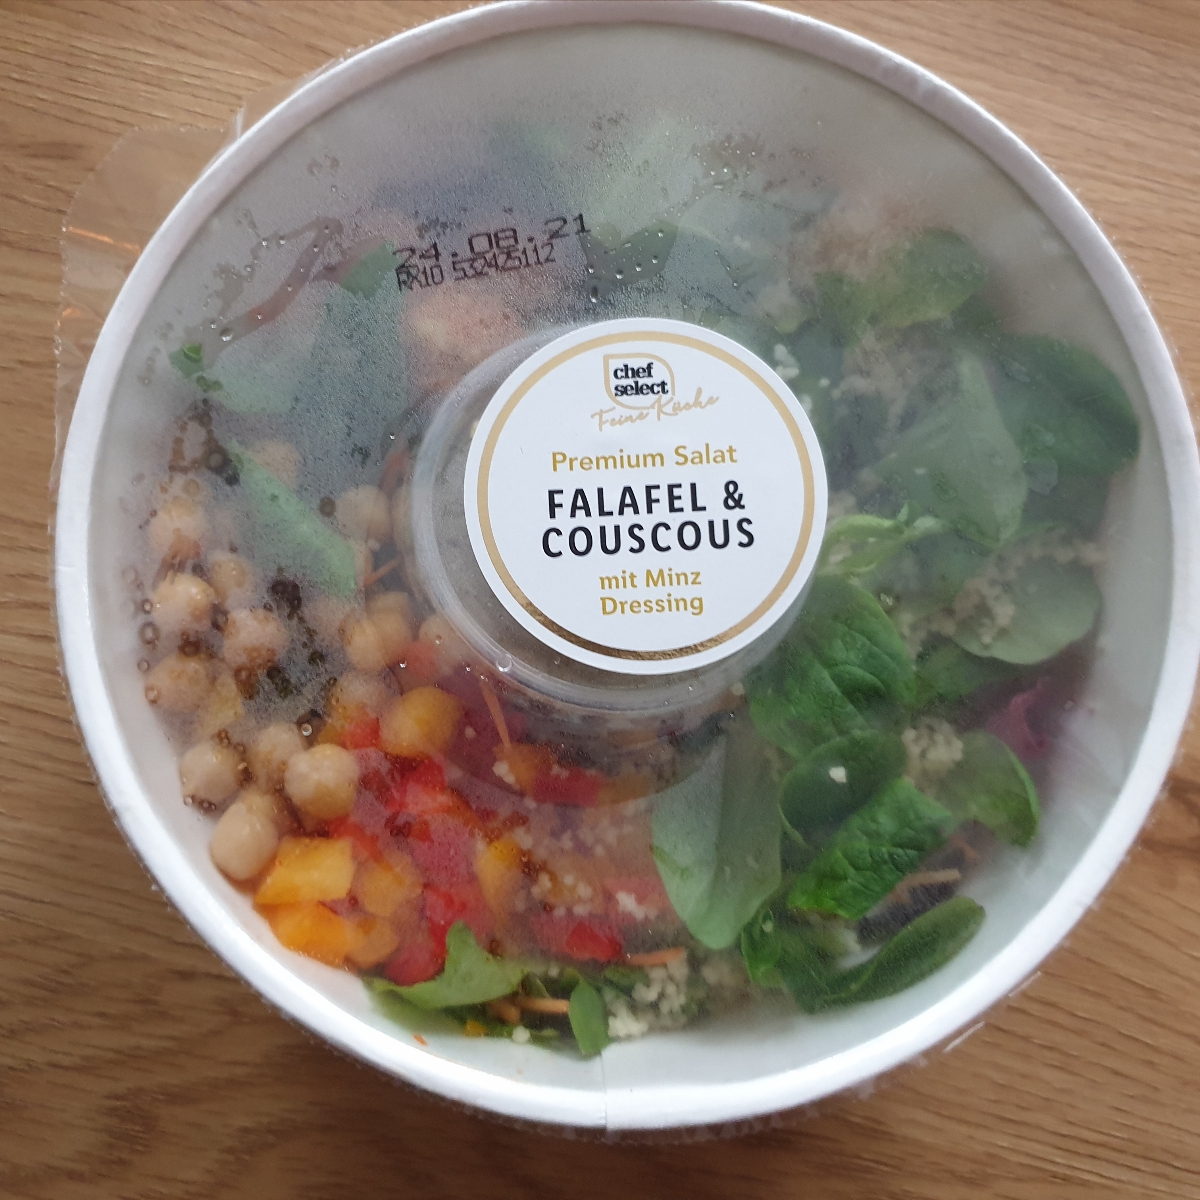 Chef Select Premium Salat Falafel Couscous Reviews | abillion